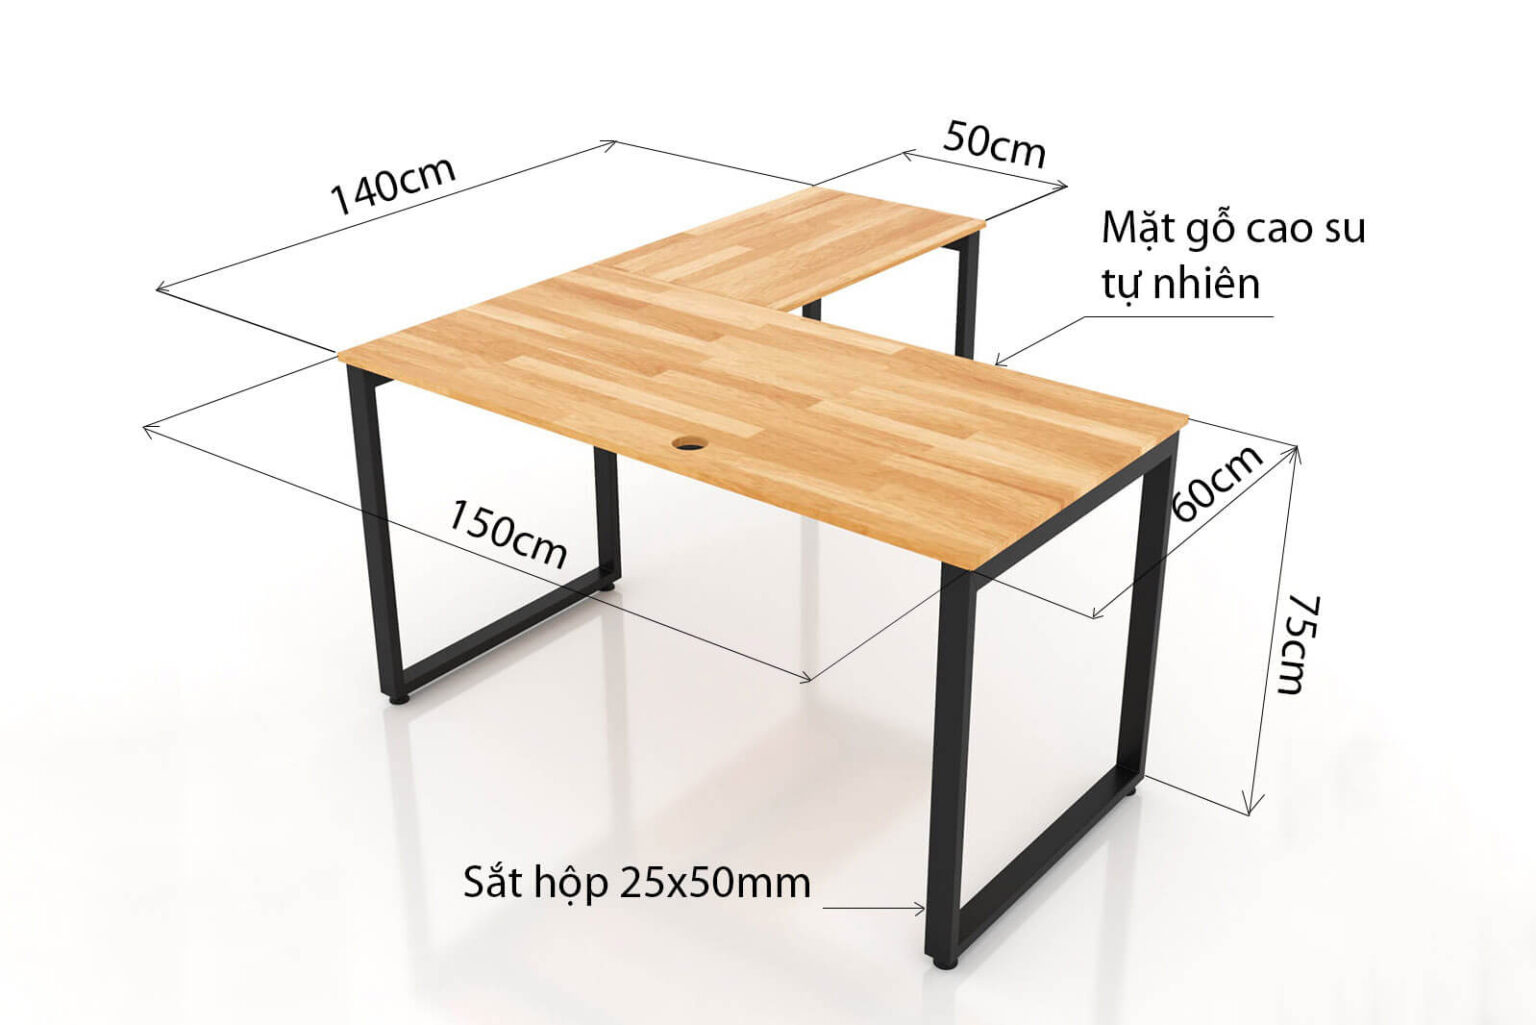 Kích thước bàn làm việc cân đối, hài hòa với không gian